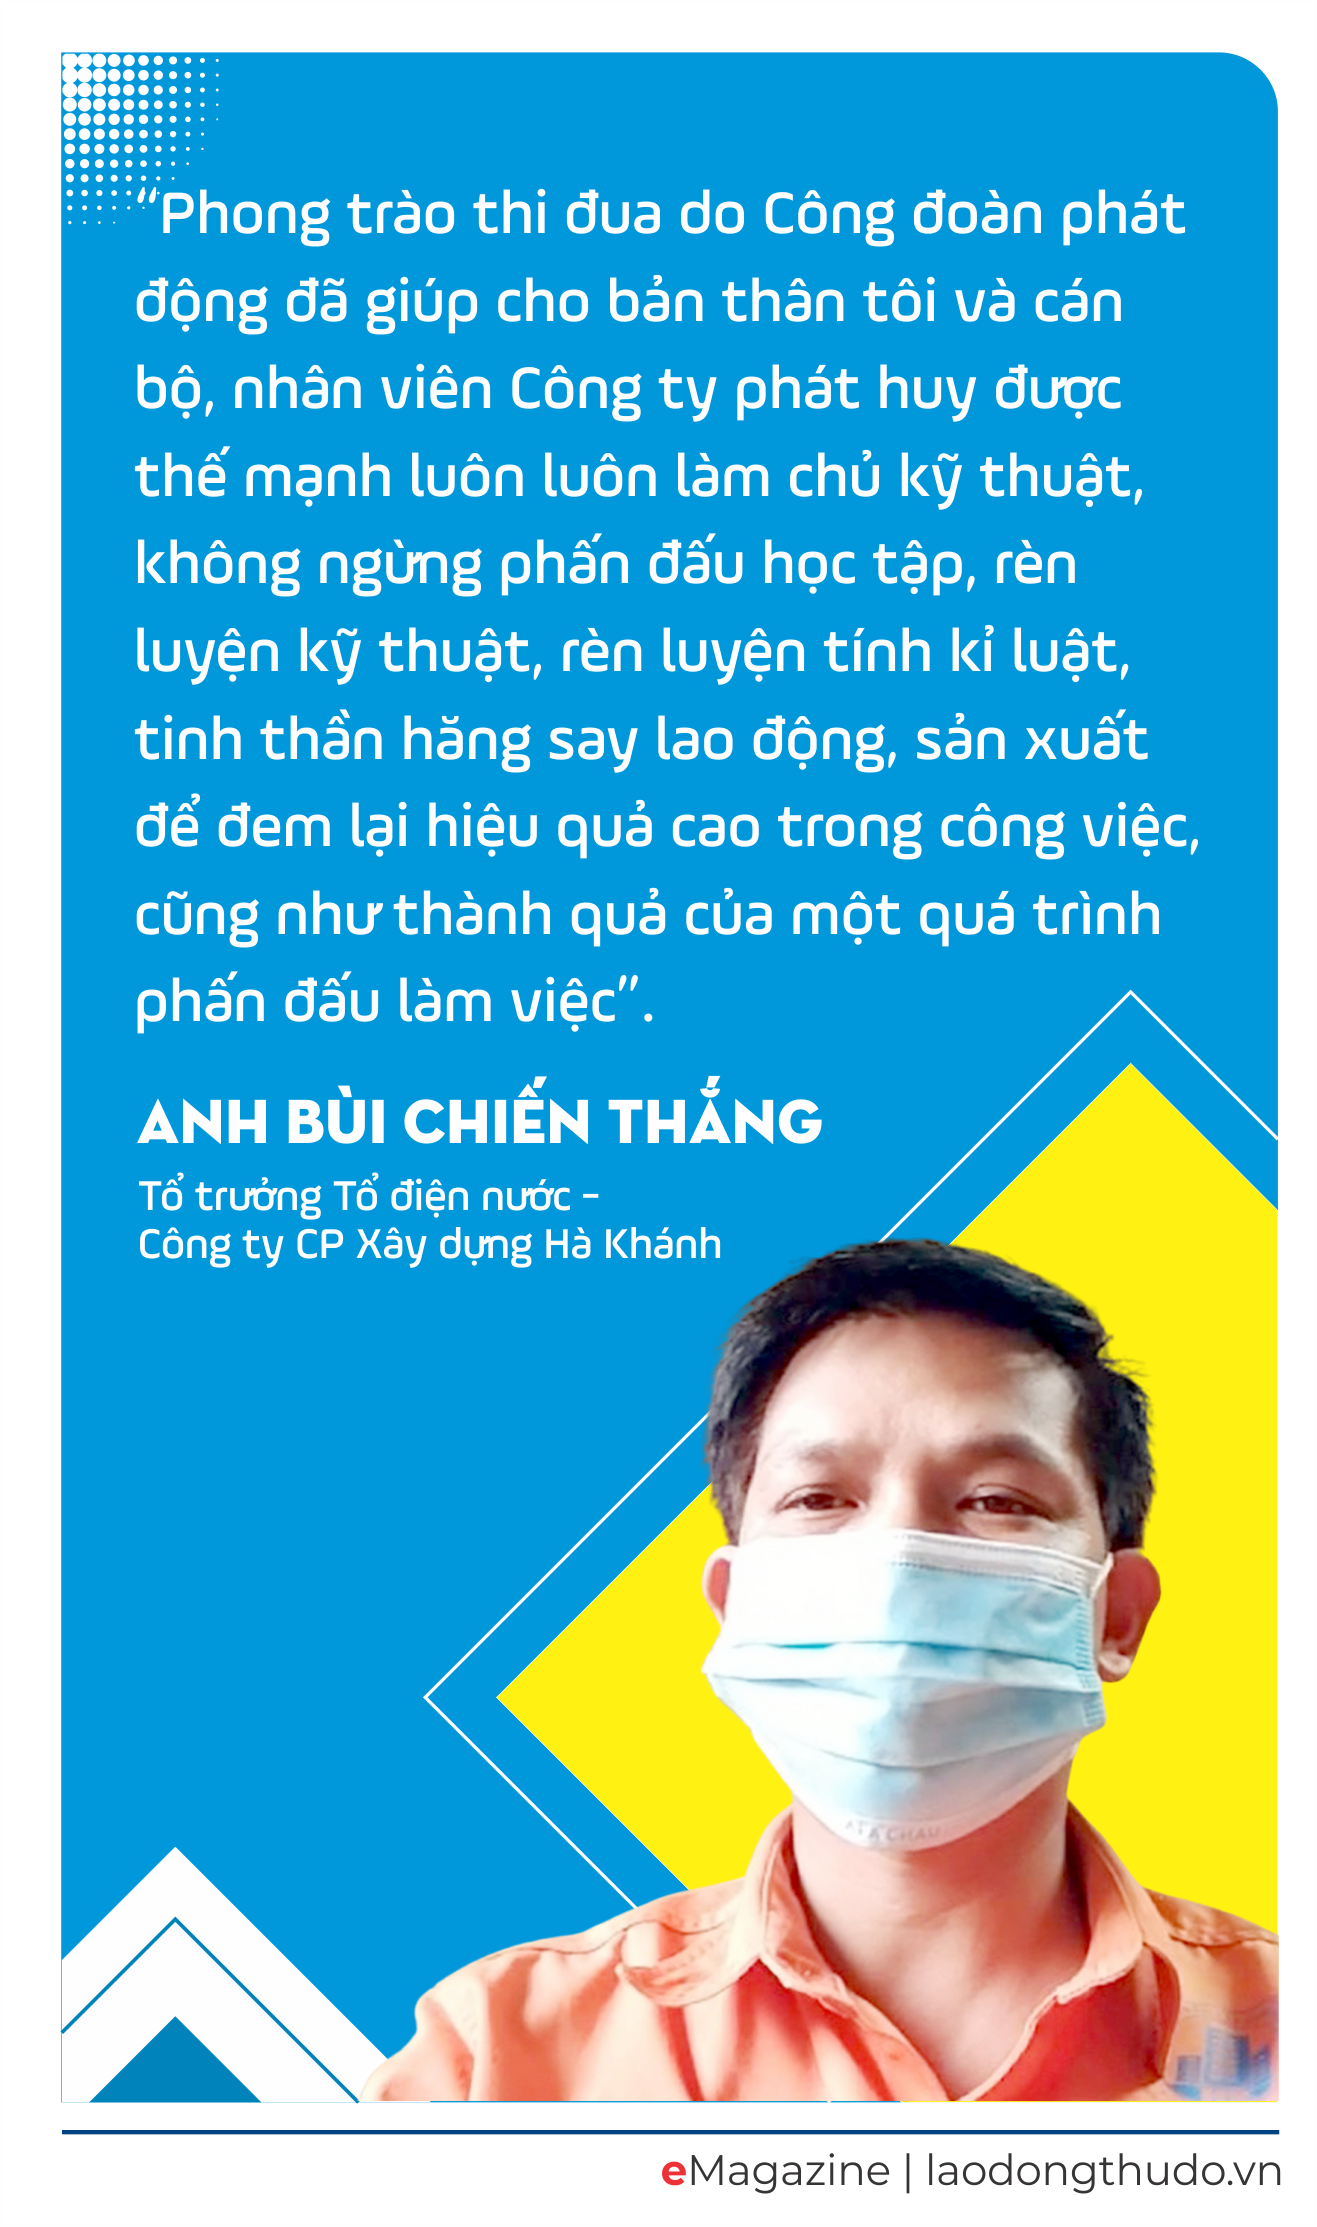 Công nhân lao động huyện Thanh Trì: Đi đầu trong thời kỳ hội nhập